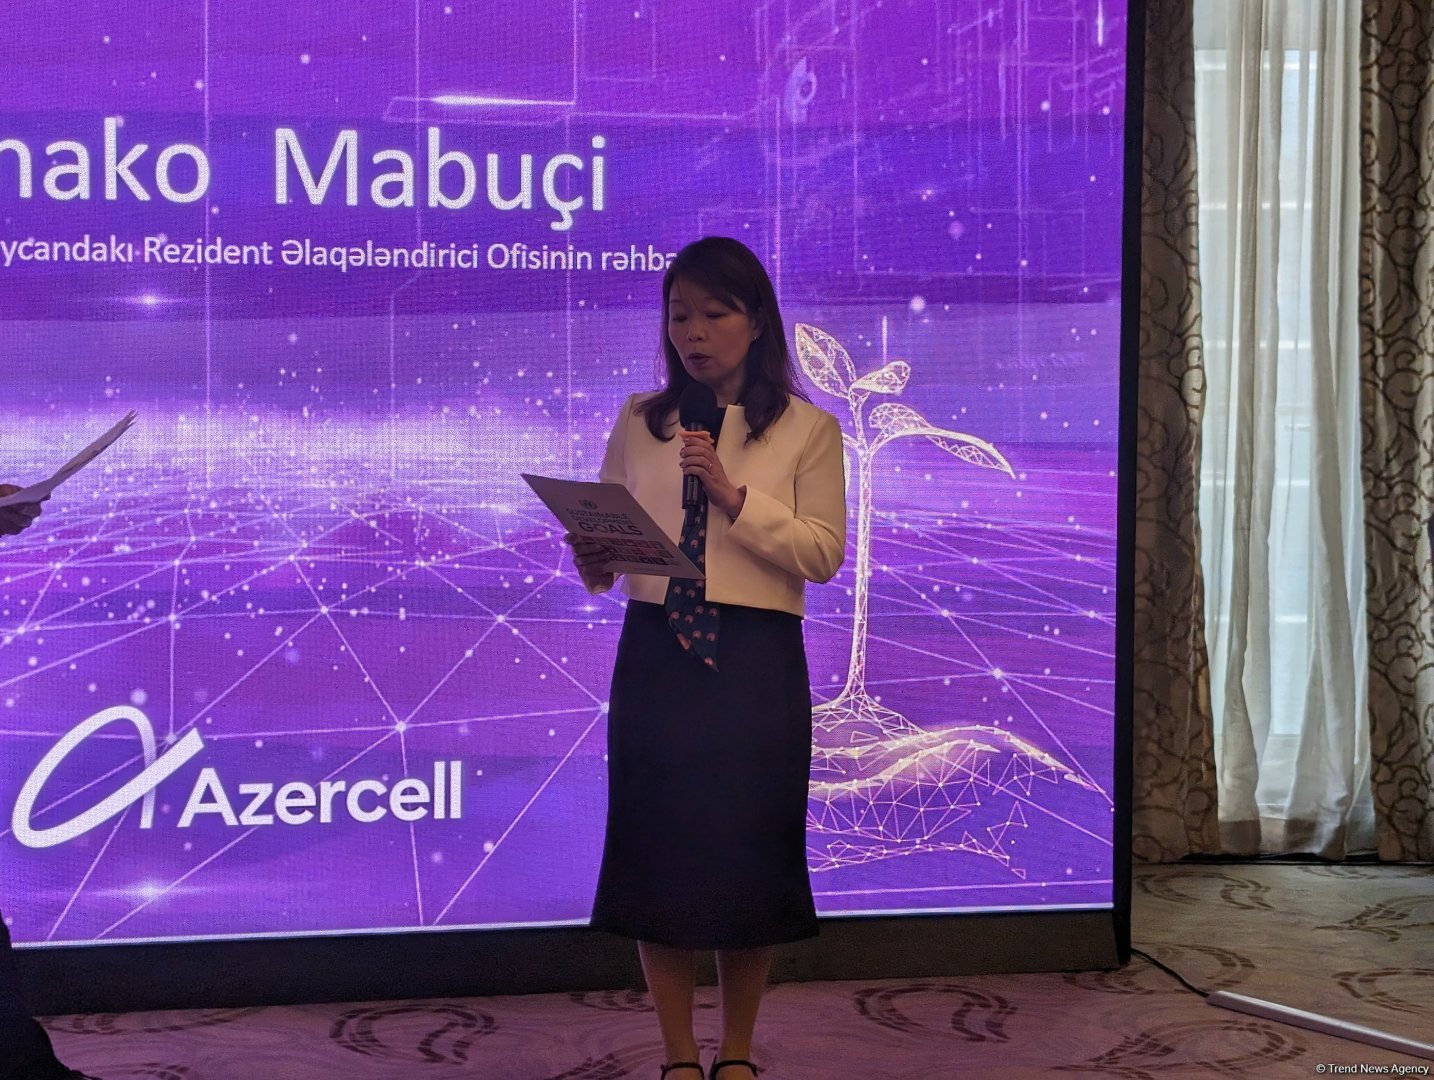 Мобильная индустрия поспособствует достижению целей Азербайджана, поставленных на 2030 год - Канако Мабучи